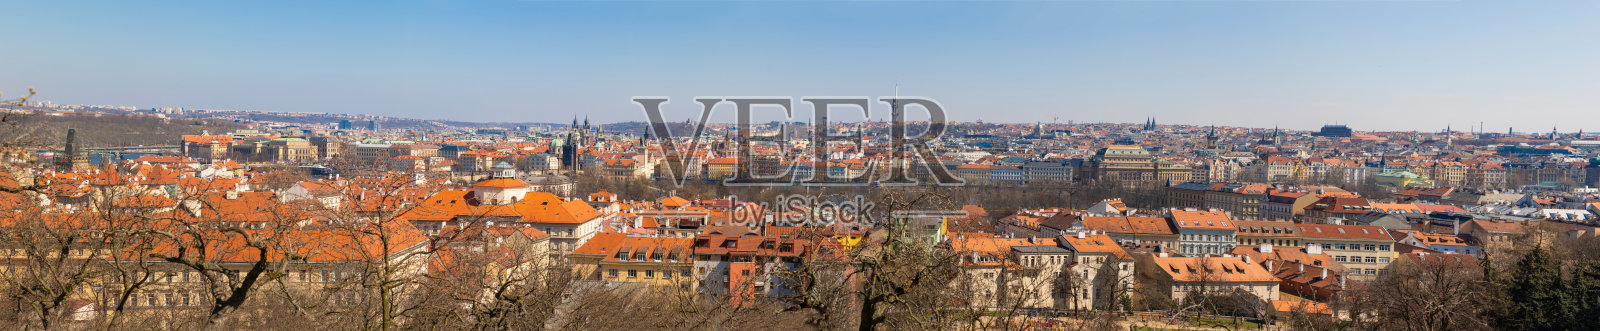 阳光明媚的布拉格老城全景照片摄影图片